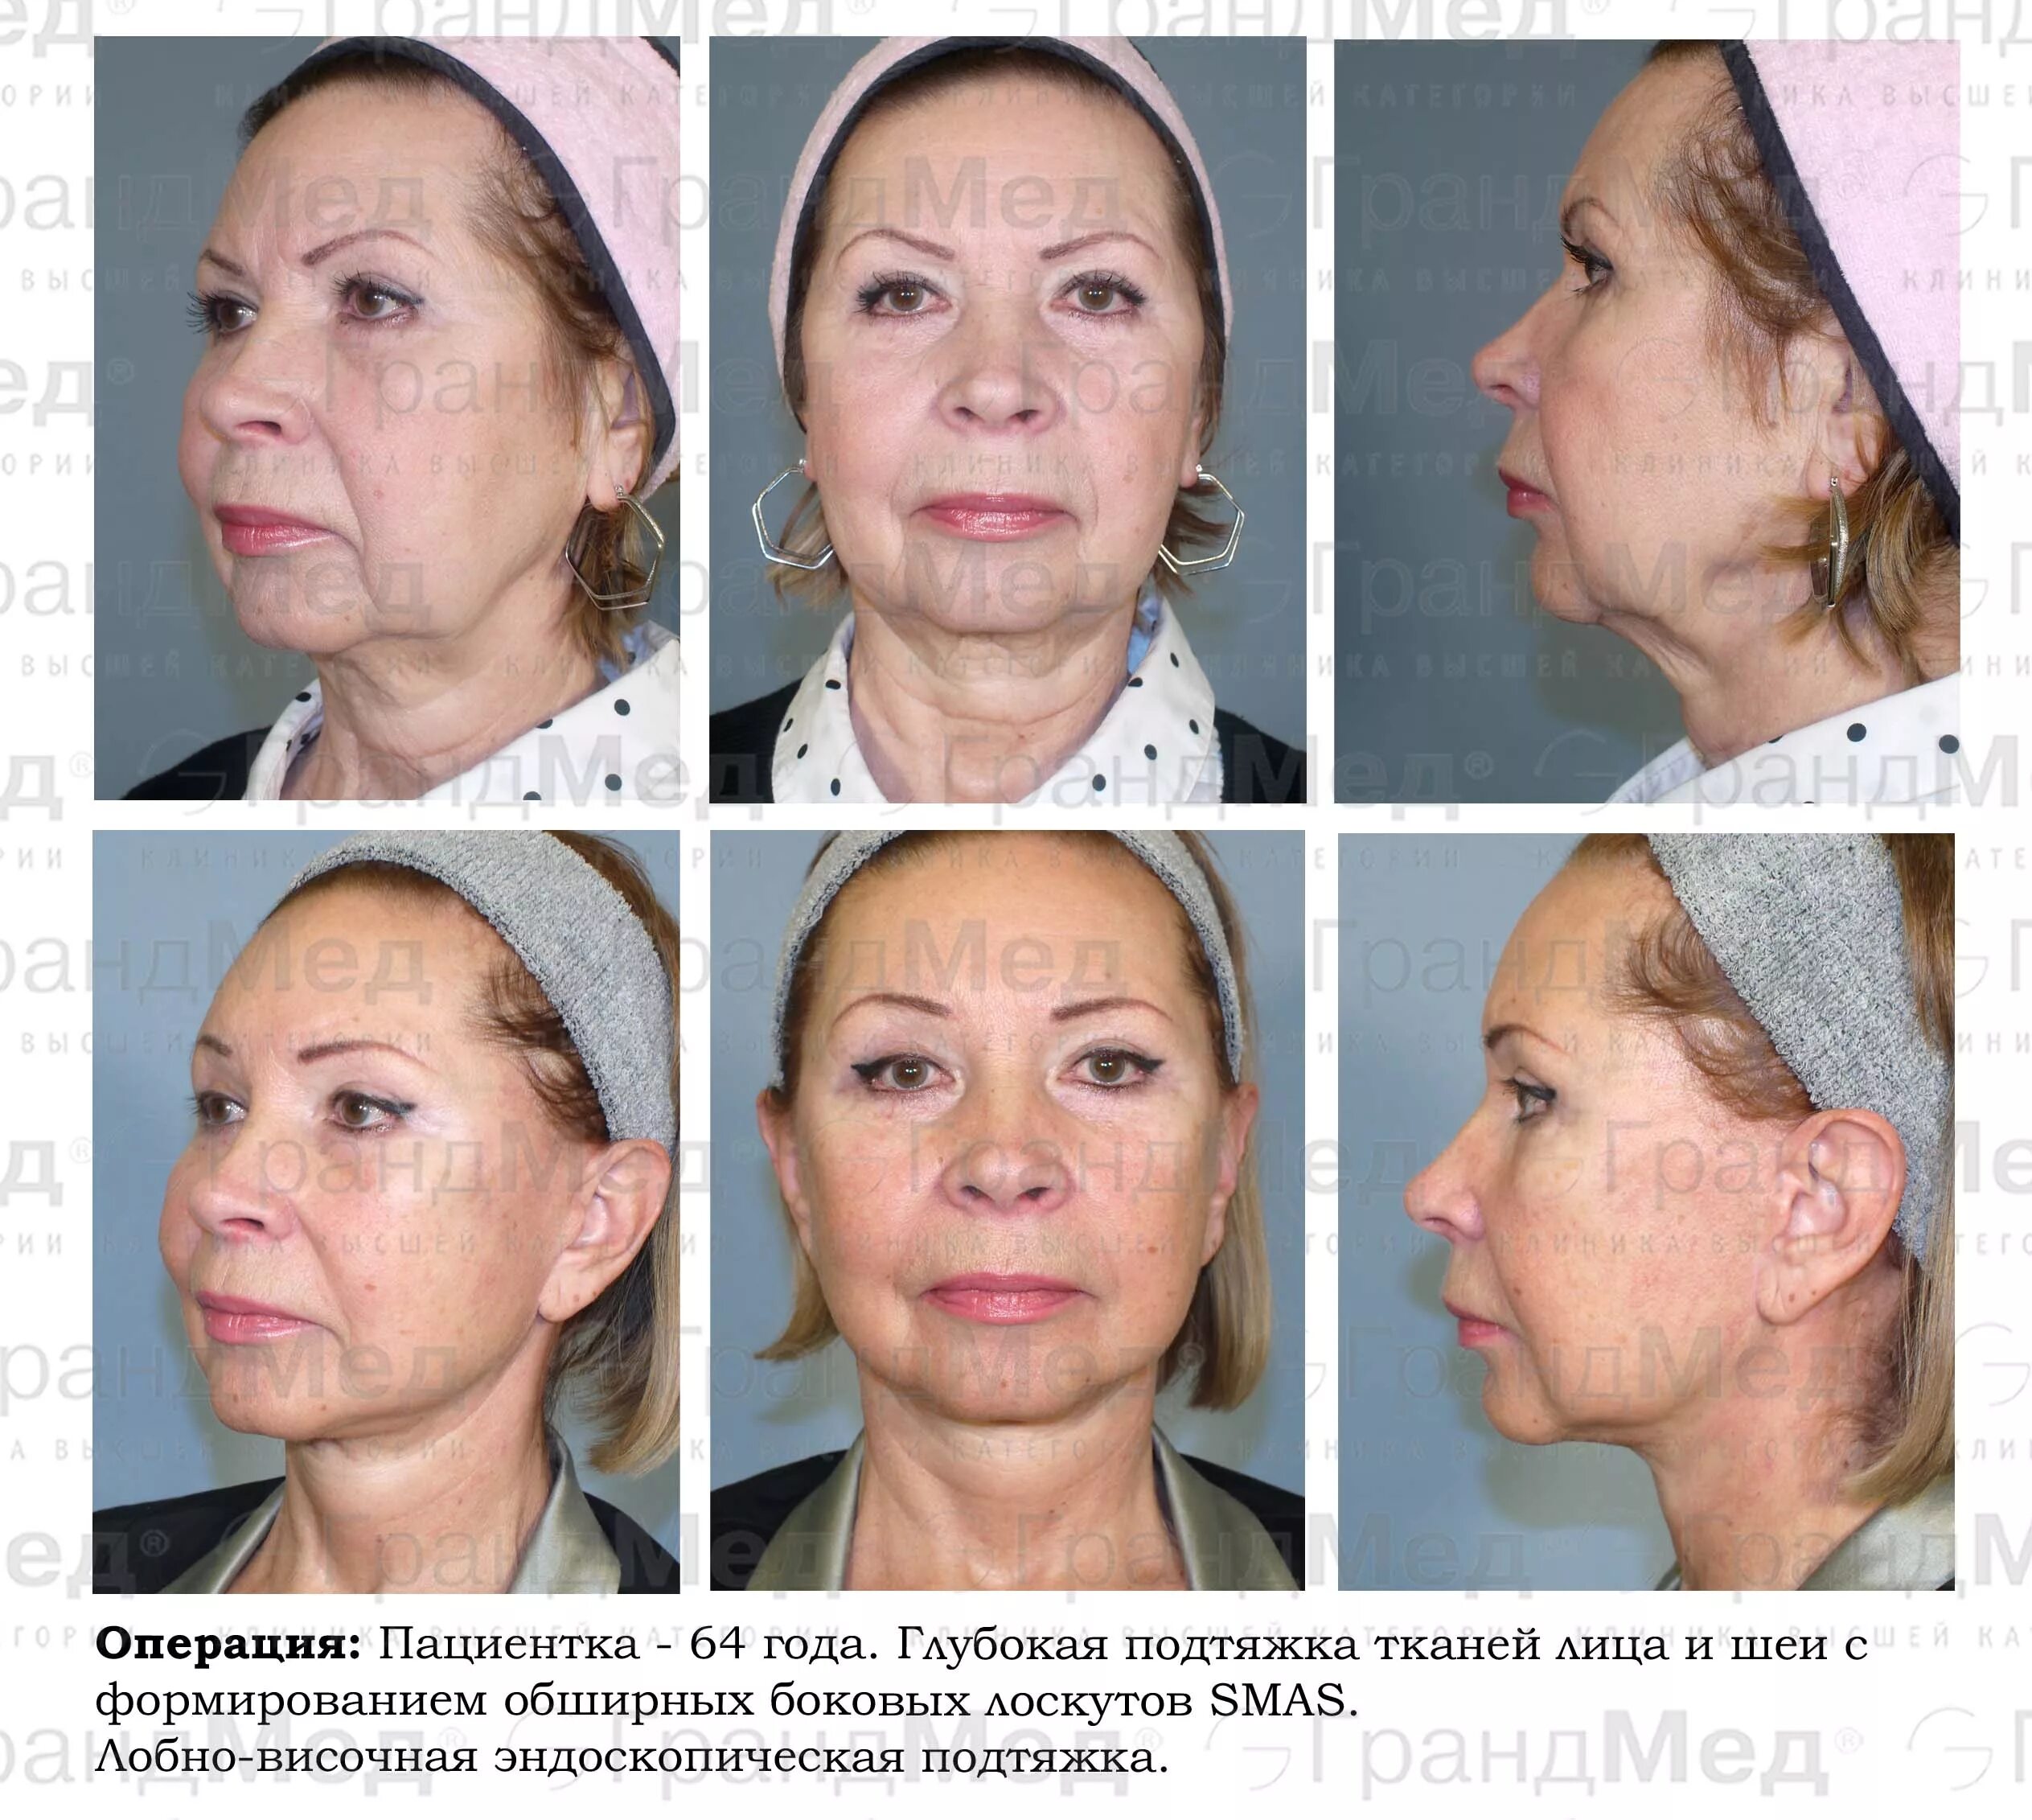 Плазмолифтинг (плазмотерапия). Плазмолифтинг для лица. Плазмолифтинг лица до и после. Плазменный лифтинг лица. Плазменная подтяжка